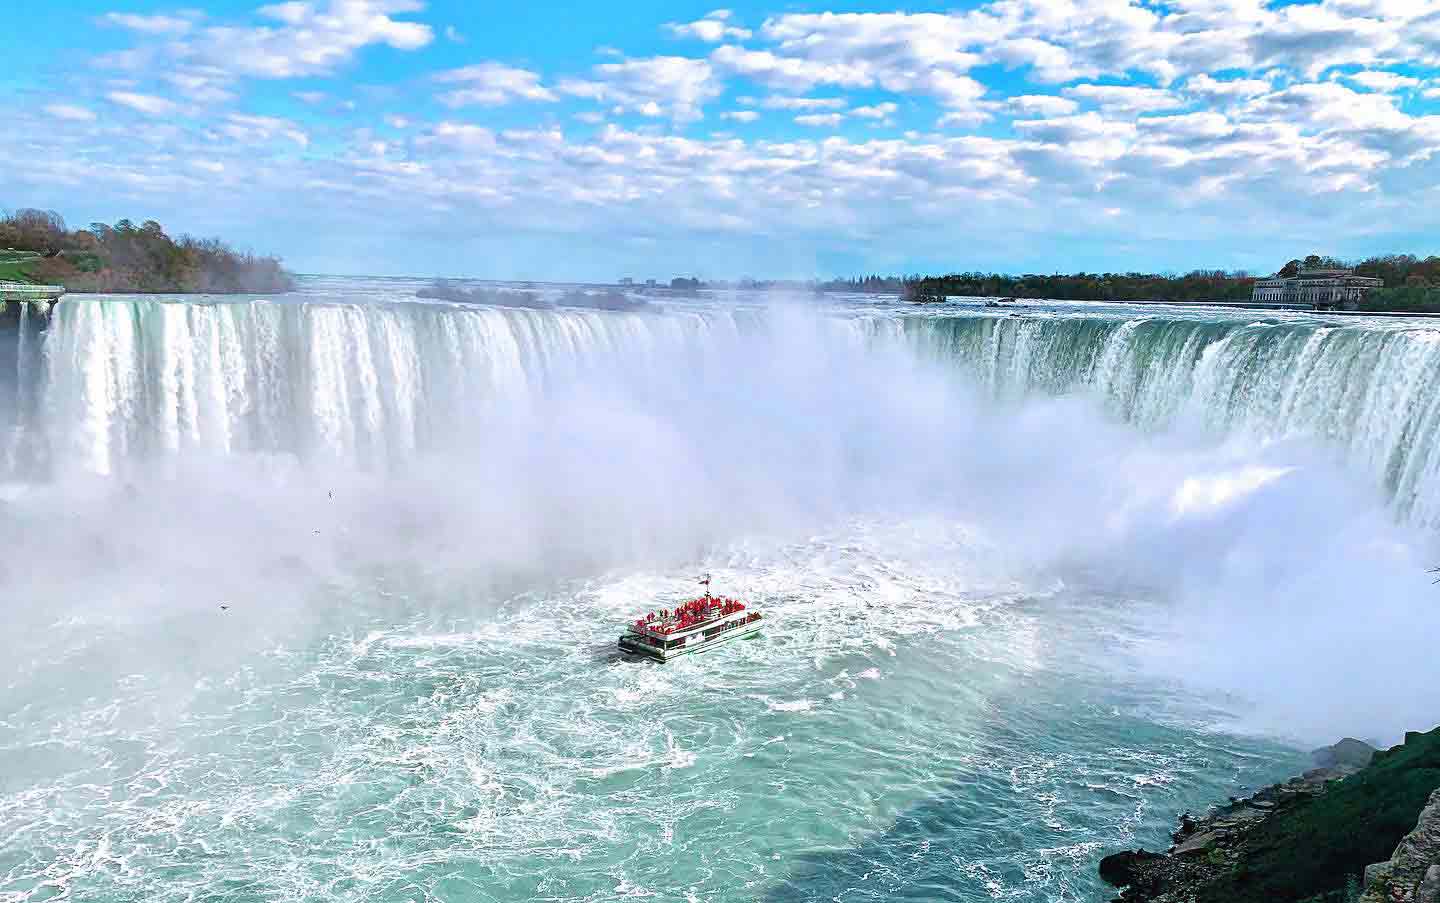 Niagara Falls with boat at base of falls